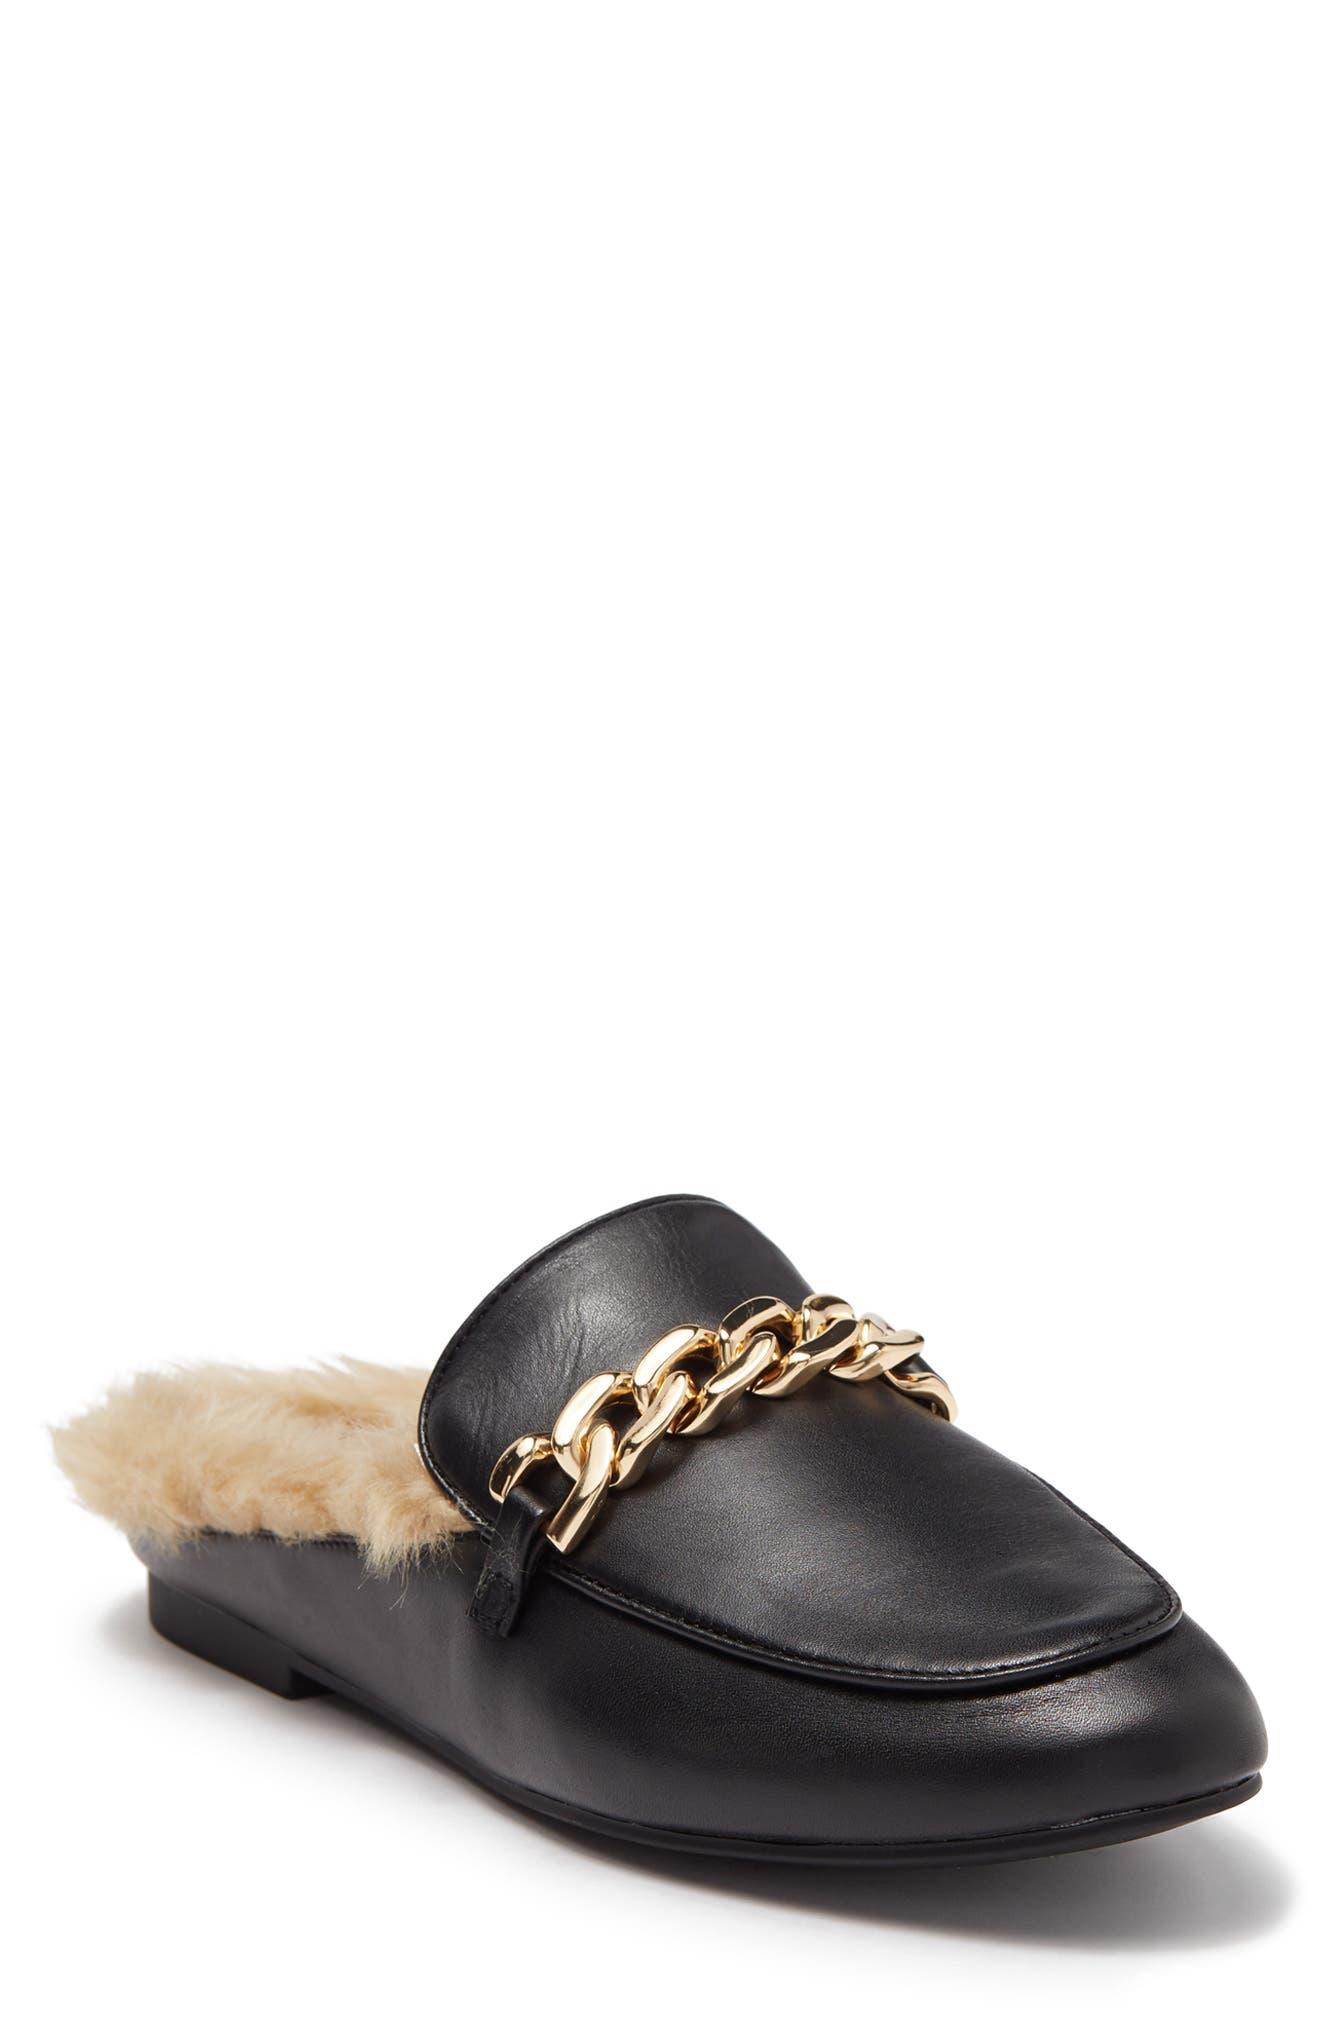 Steve Madden Feleti Faux Fur Lined Leather Loafer Mule in Black | Lyst